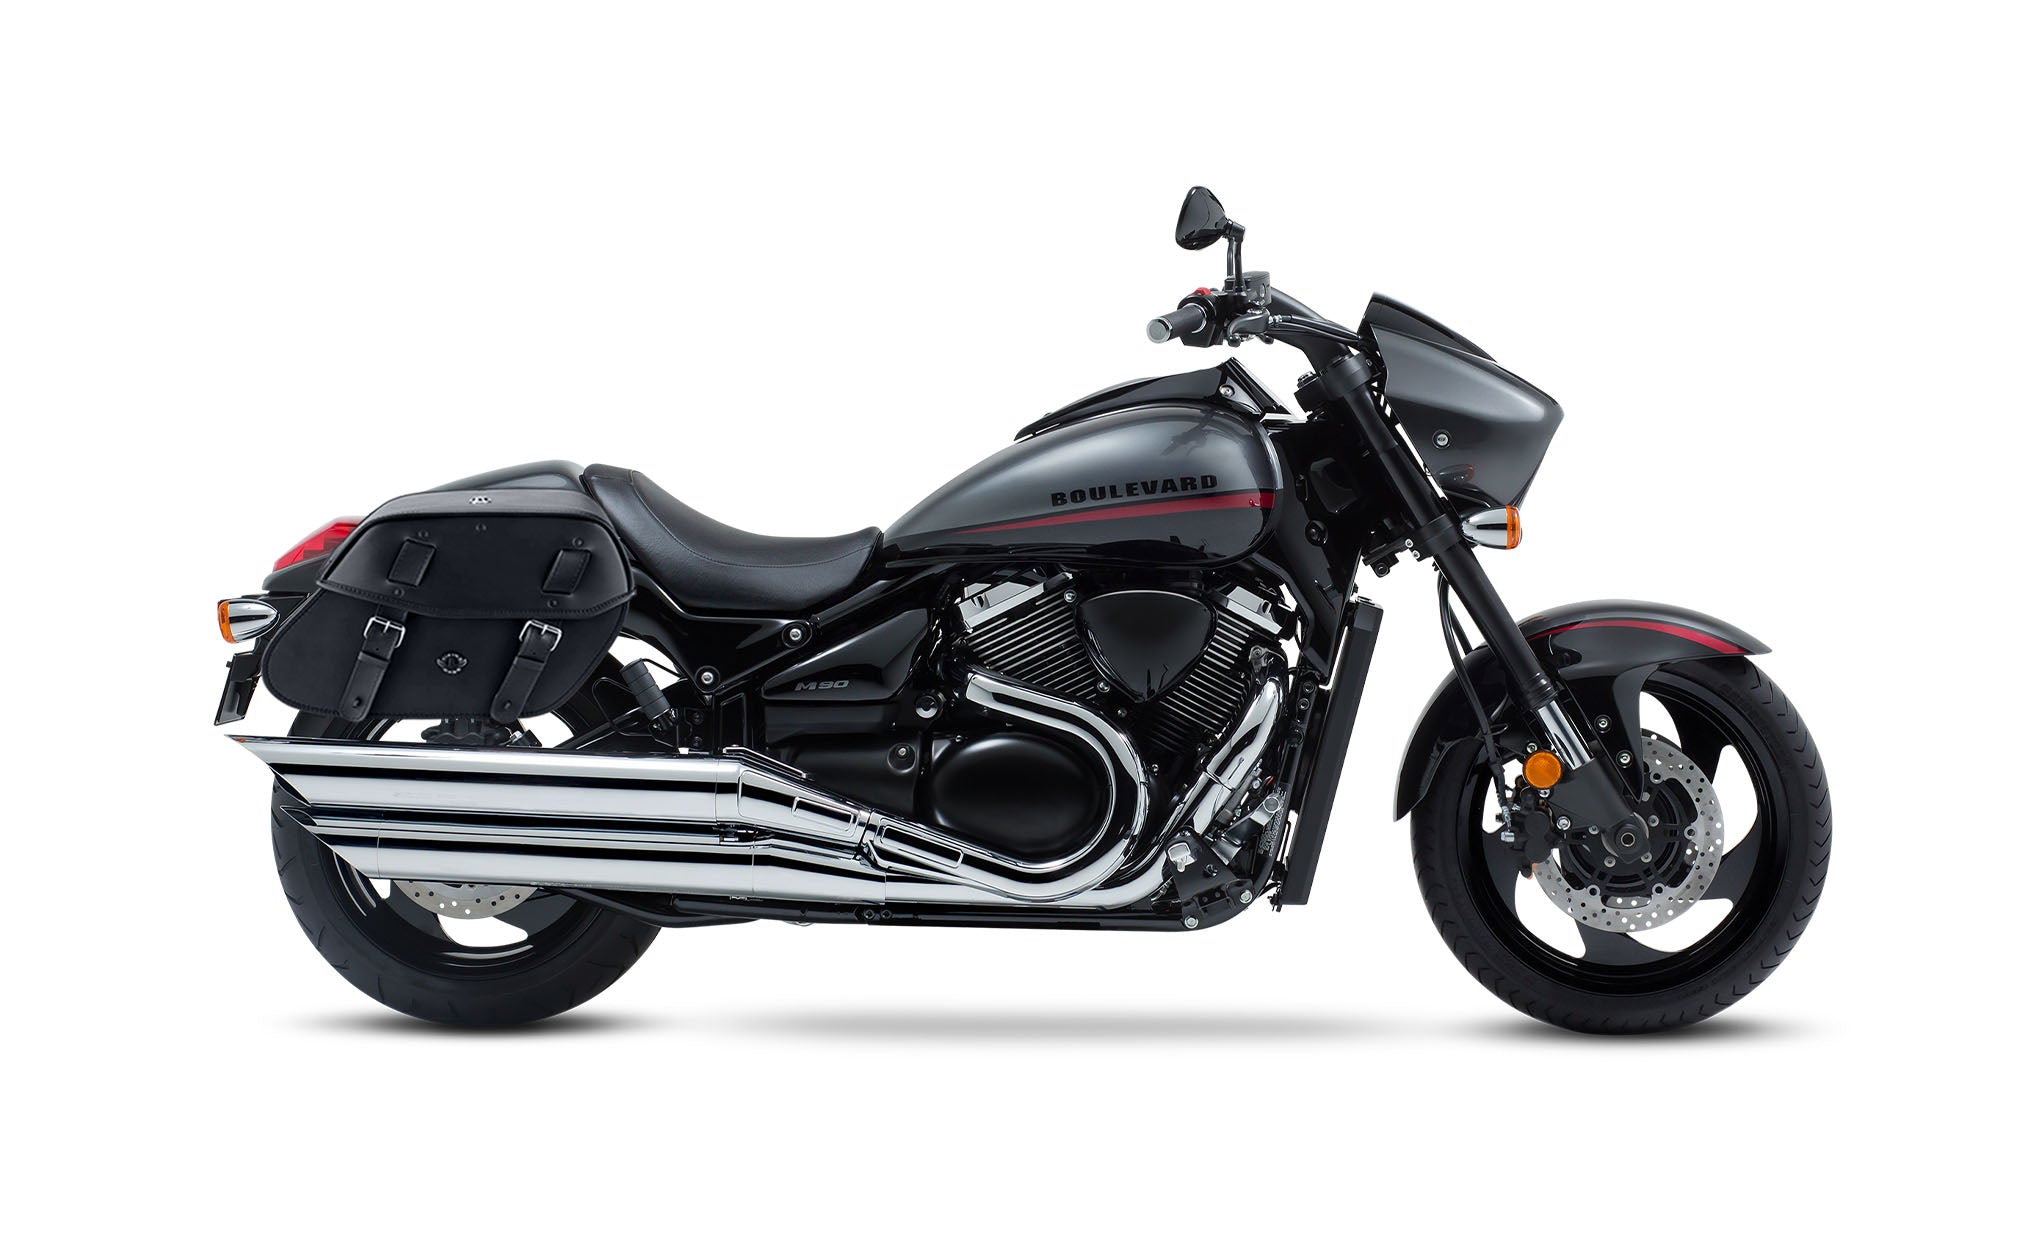 Viking Odin Large Suzuki Boulevard M90 Vz1500 Leather Motorcycle Saddlebags on Bike Photo @expand